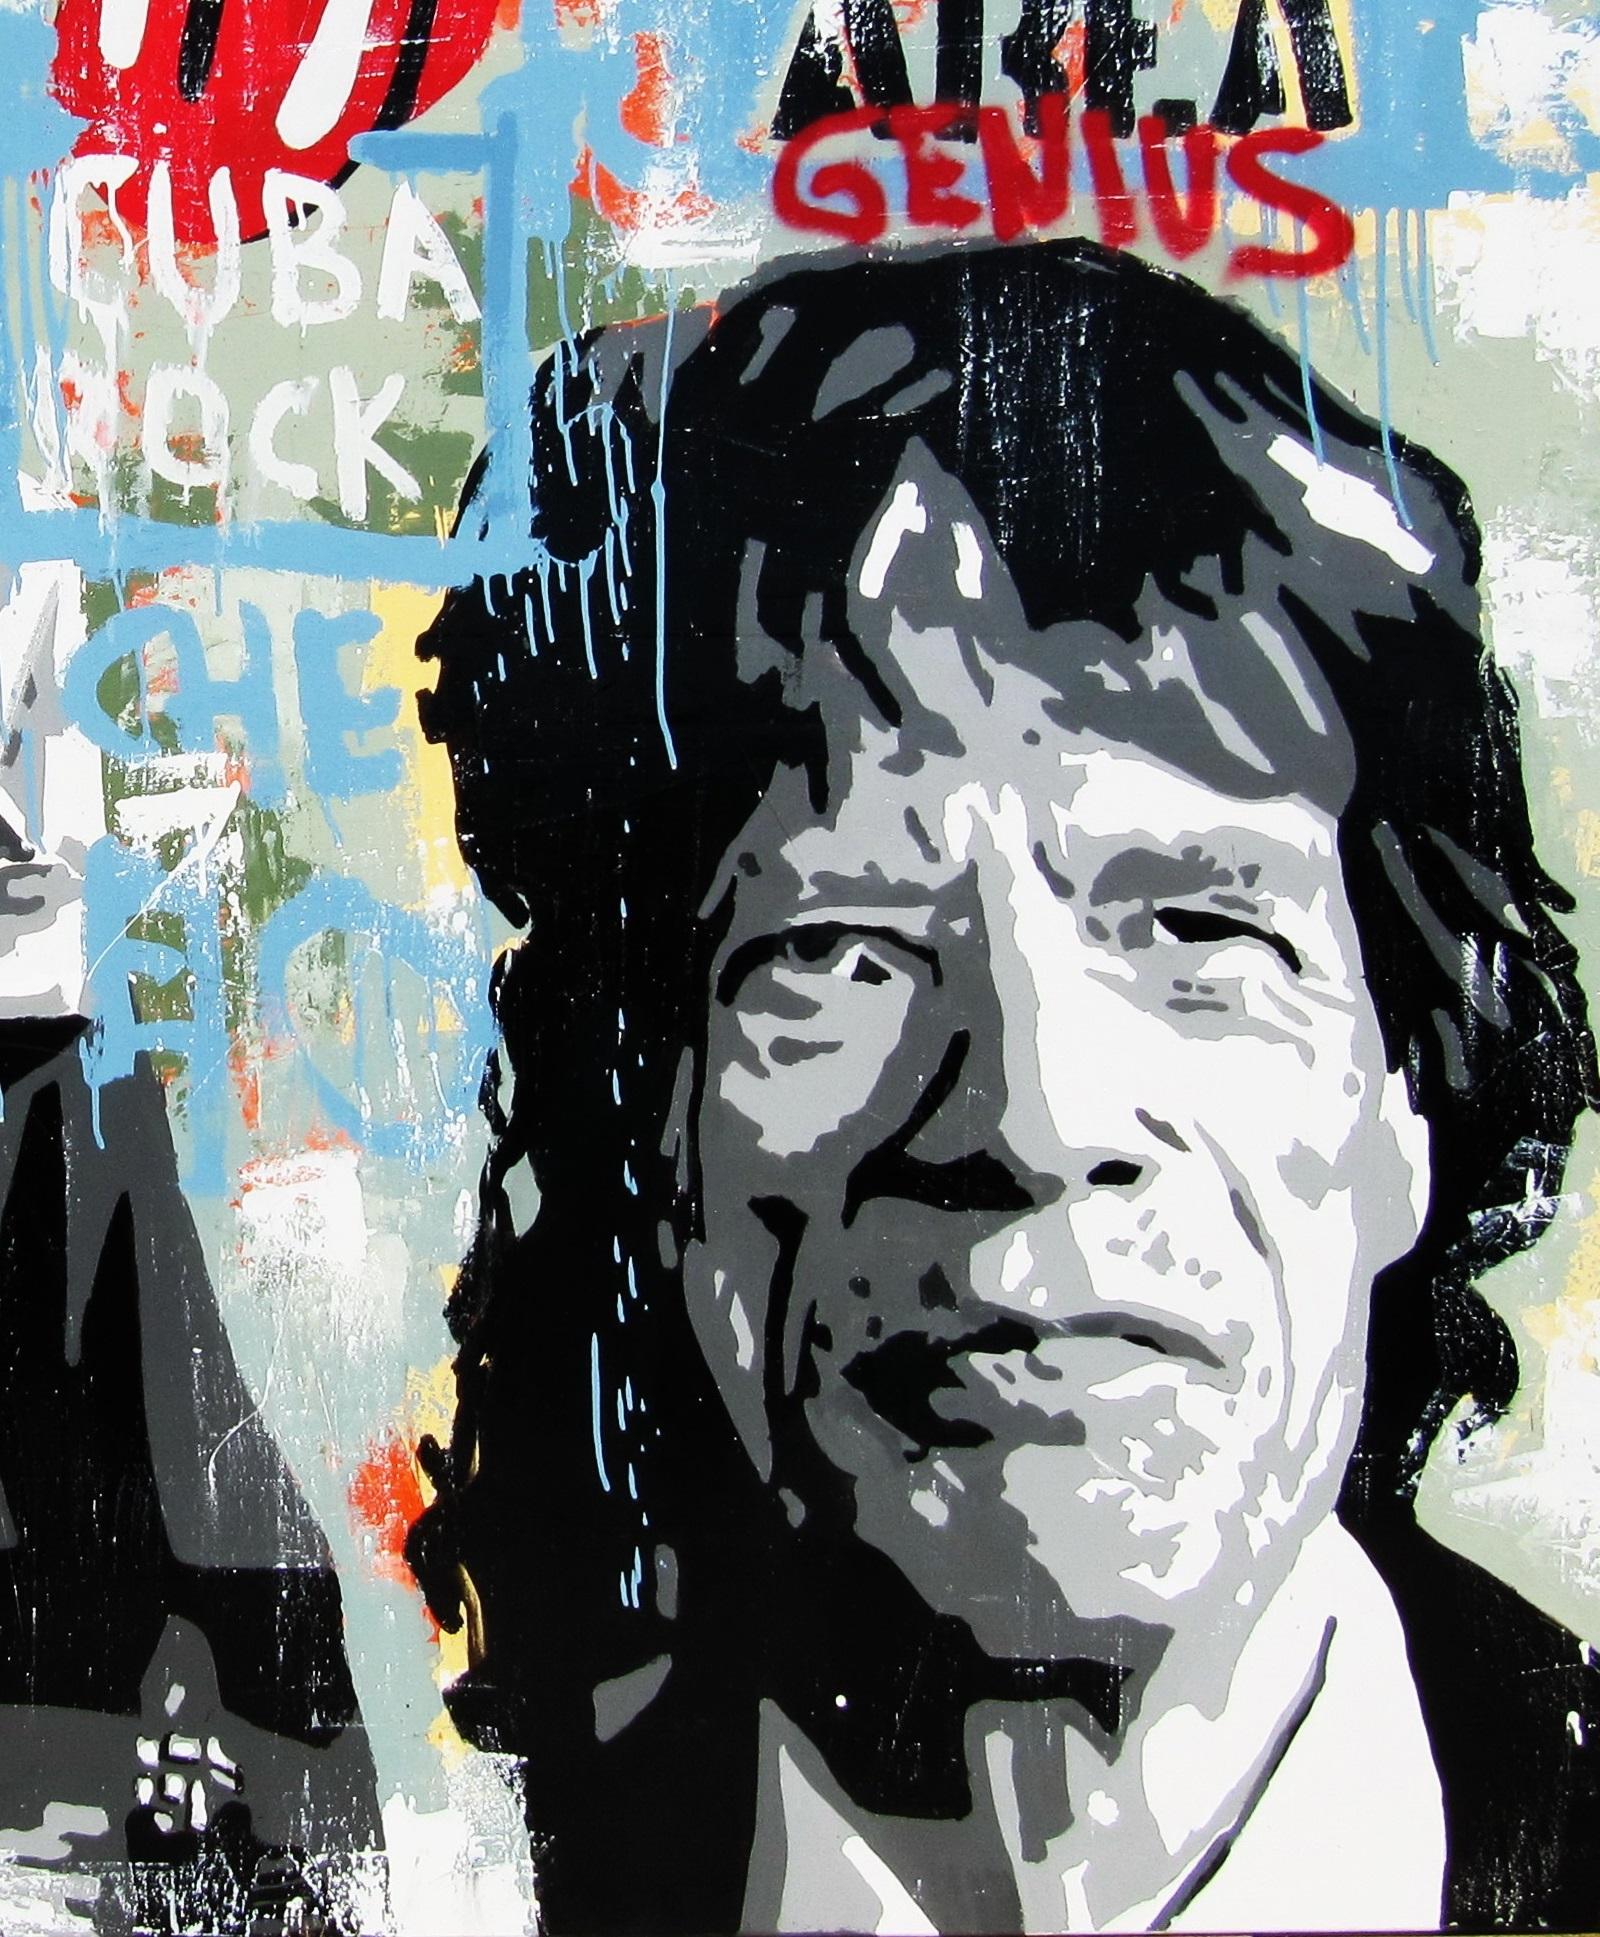 Pajares  Mick Jagger  Cuba Rock  Big   Original- street art Mixed Media  - Painting by JUAN MANUEL PAJARES